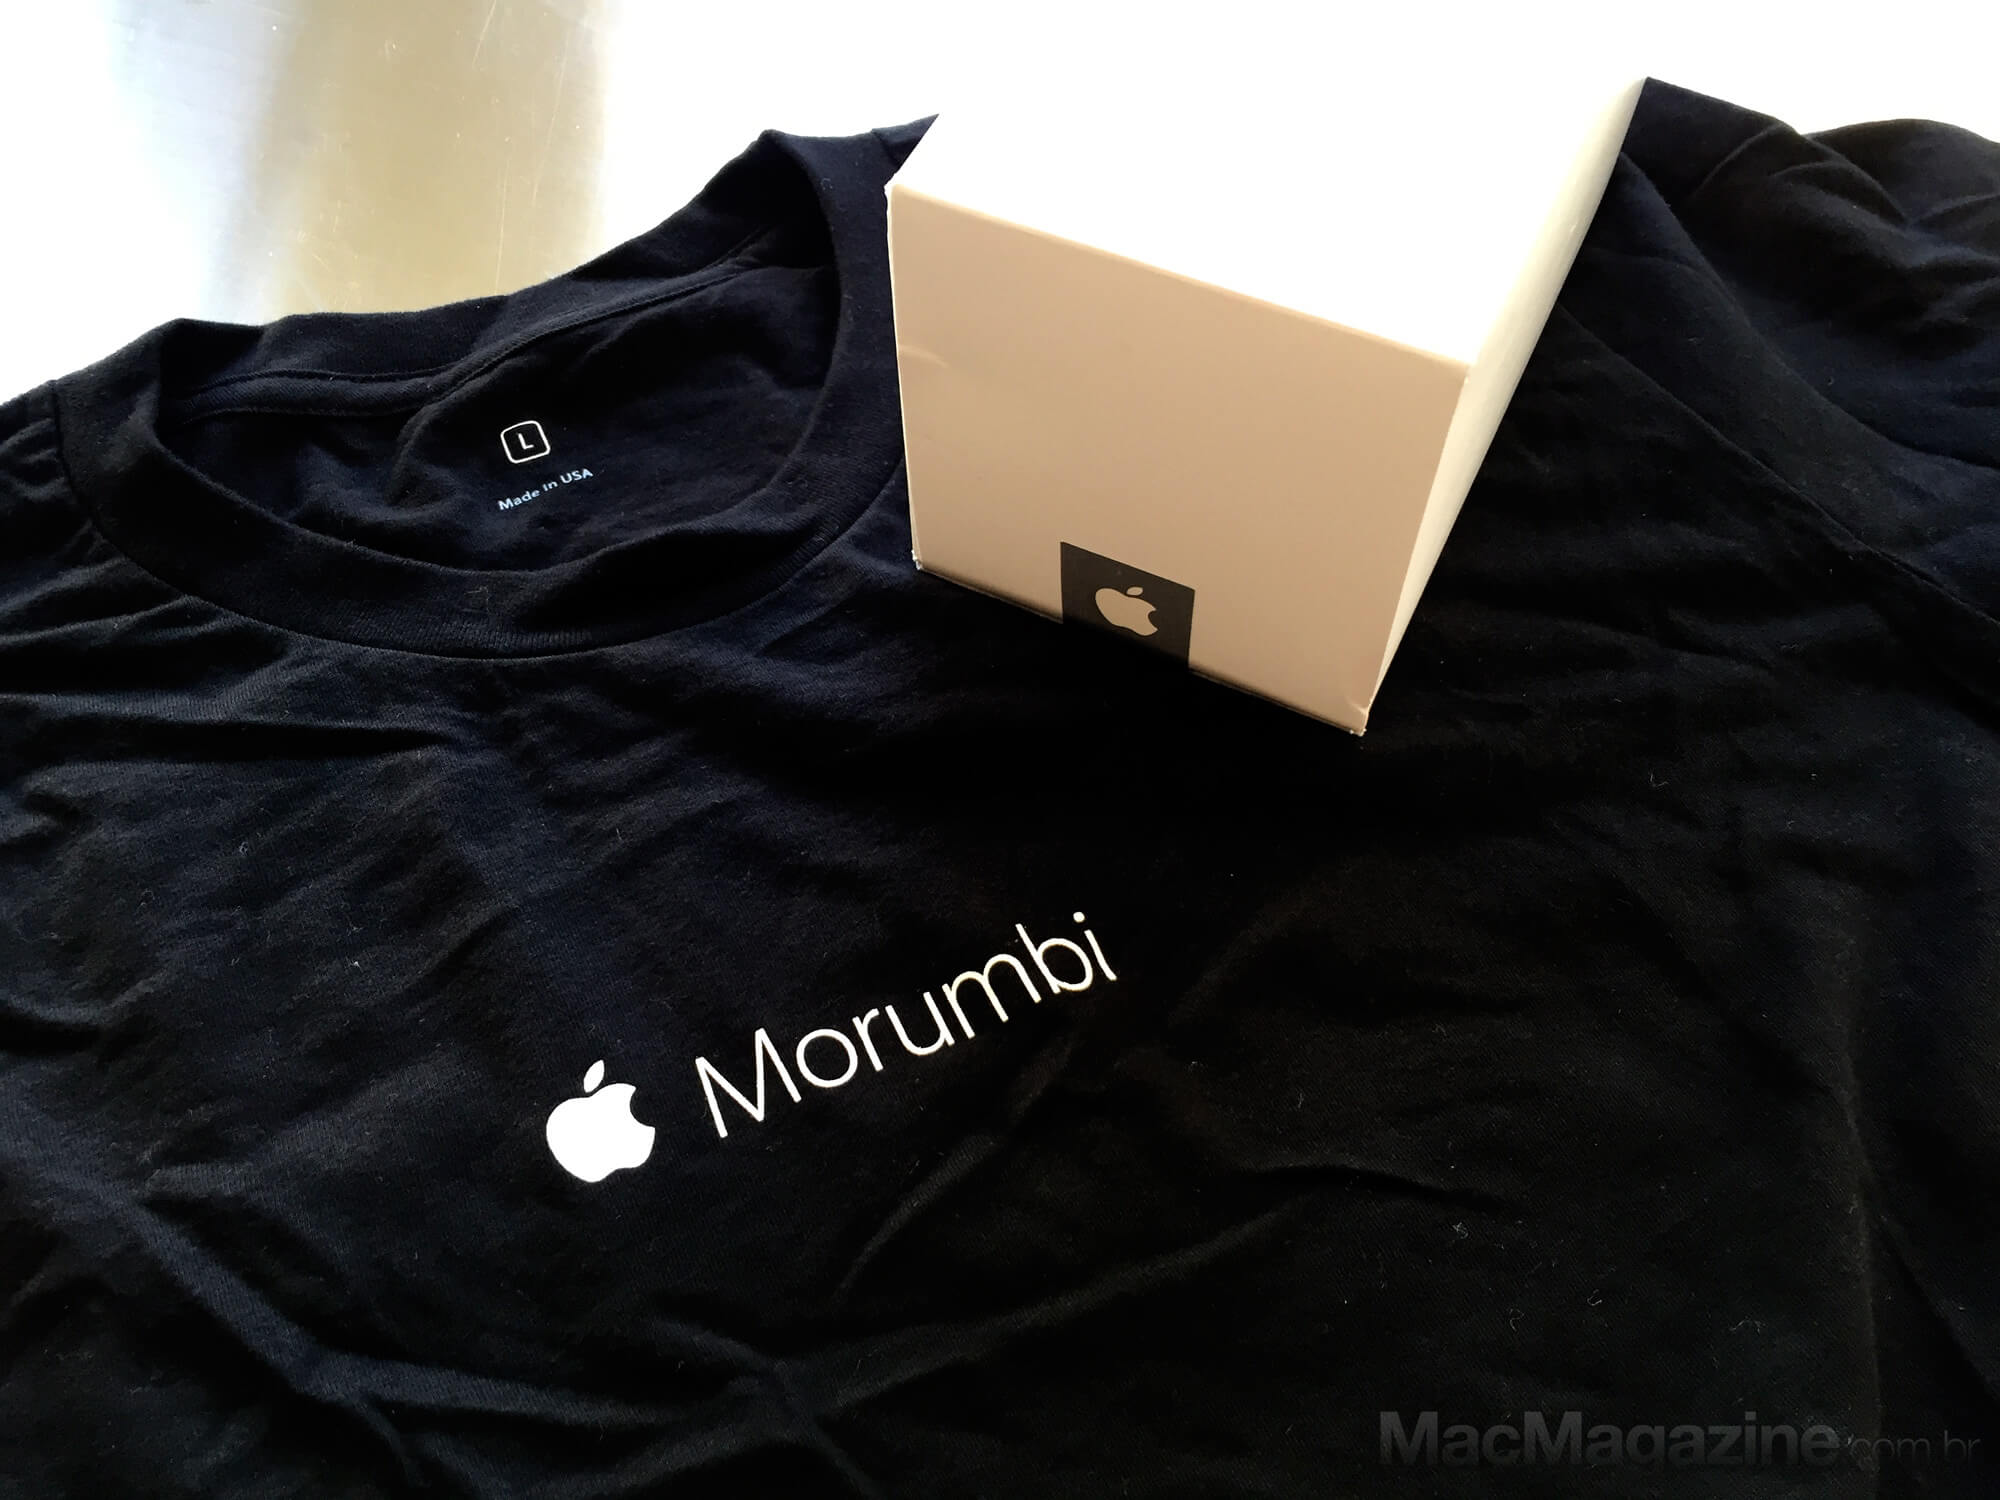 Sorteio da camiseta comemorativa da Apple Store - Morumbi